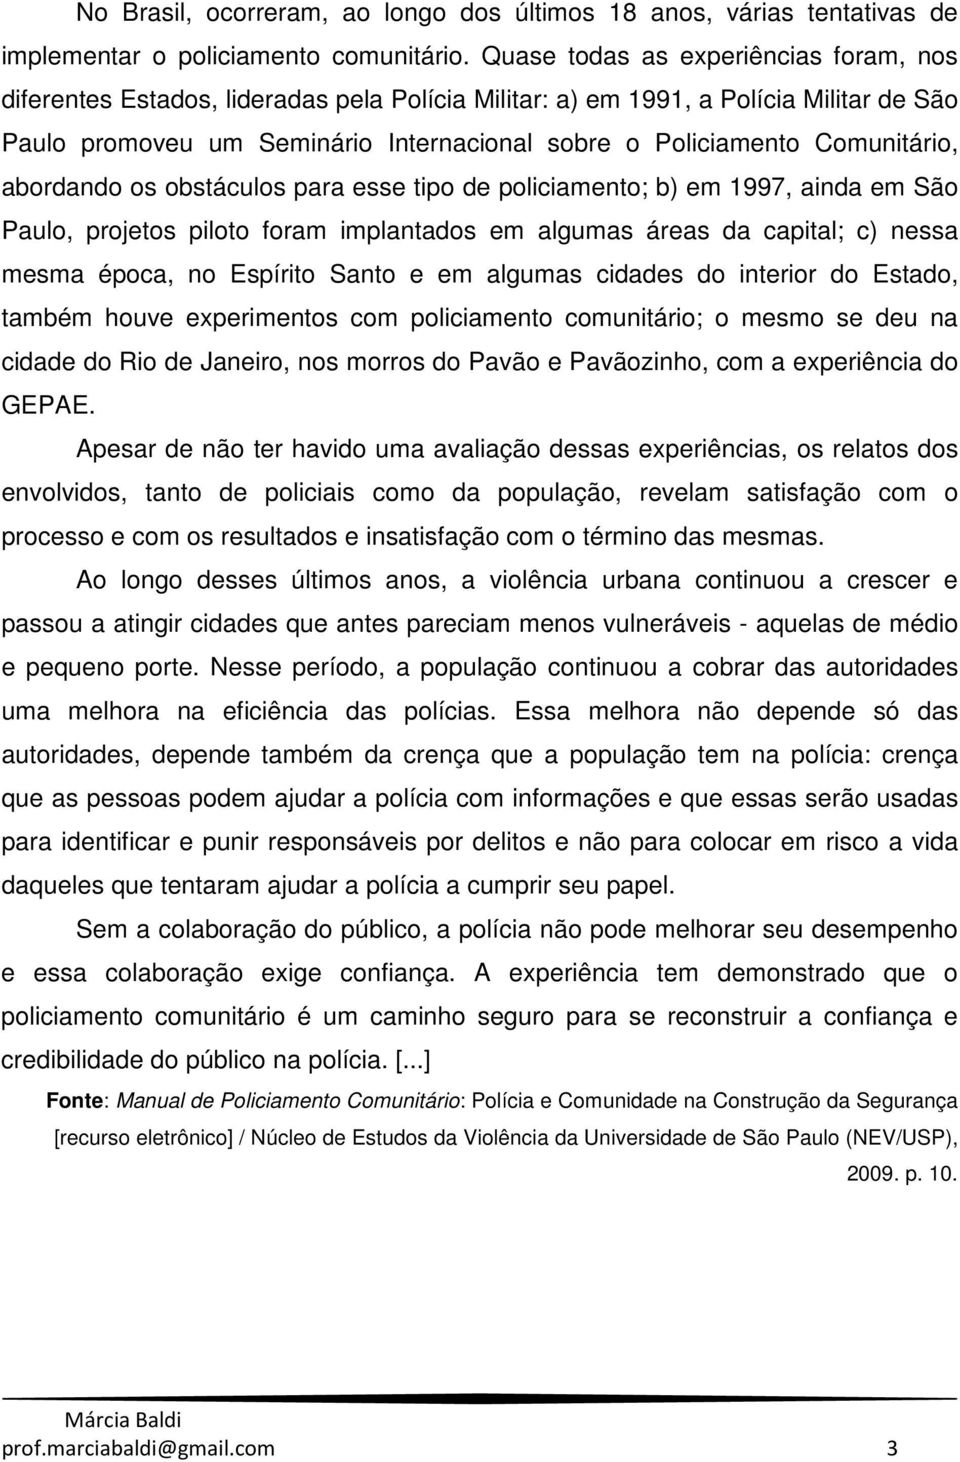 Comunitário, abordando os obstáculos para esse tipo de policiamento; b) em 1997, ainda em São Paulo, projetos piloto foram implantados em algumas áreas da capital; c) nessa mesma época, no Espírito